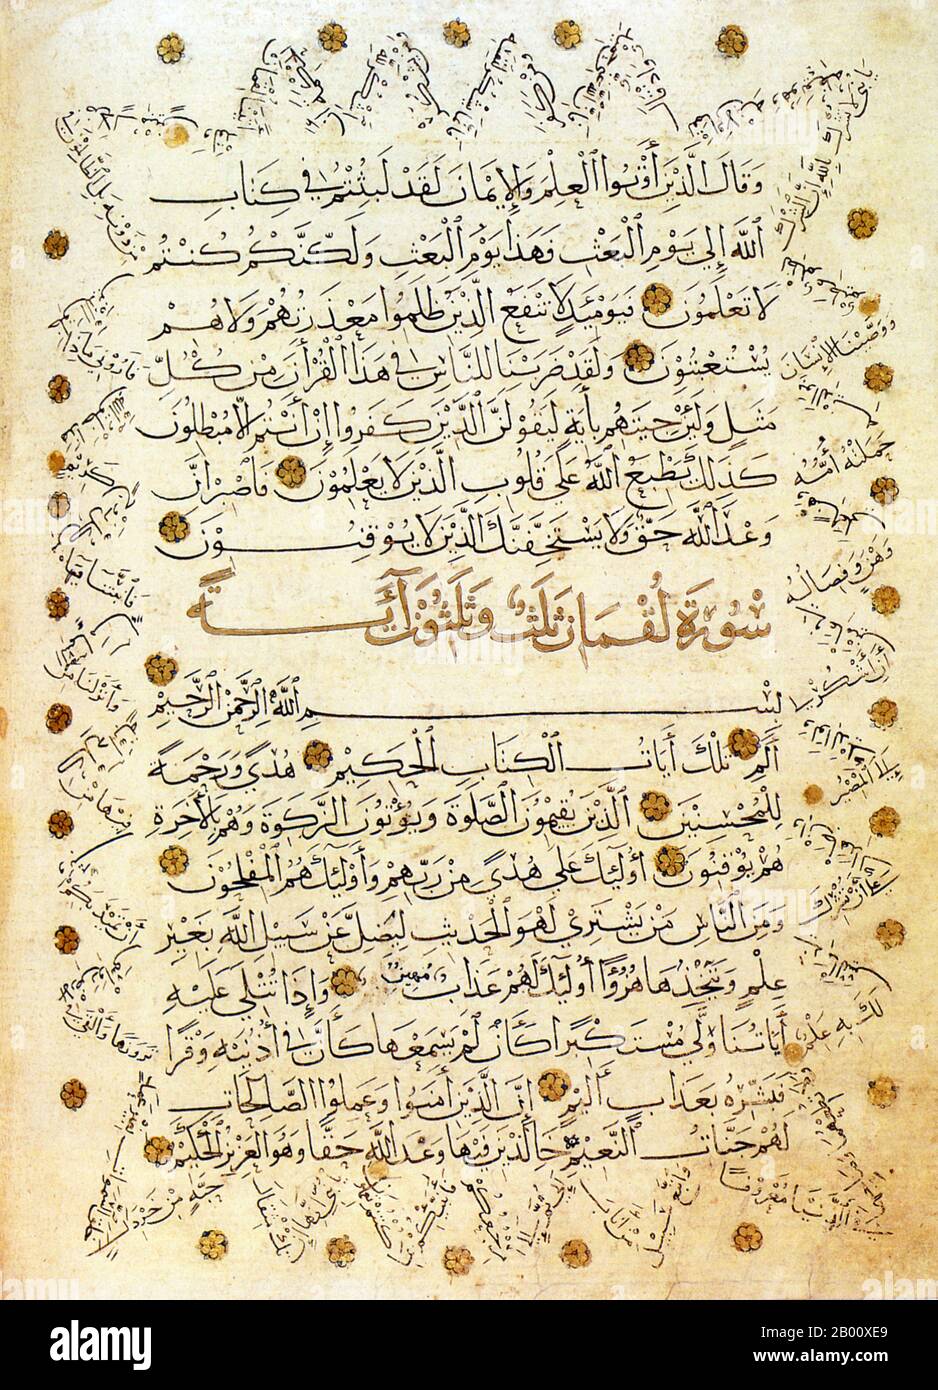 Irak: Eine Seite eines beleuchteten Korans, handgeschrieben auf Papier, das Mitte des 14. Jahrhunderts in Venedig hergestellt wurde. Der Zickzacktext in den Rändern ist eine Fortsetzung des Manuskripts, das geschrieben wurde, um die Verwendung von teurem importiertem Papier zu sparen. Der Koran (wörtlich die Rezitation) ist der wichtigste religiöse Text des Islam. Muslime glauben, dass der Koran die verbale göttliche Führung und moralische Richtung für die Menschheit ist. Muslime betrachten auch den ursprünglichen arabischen verbalen Text als die endgültige Offenbarung Gottes. Muslime glauben, dass der Koran von Gott an Muhammad durch den Engel Gabriel offenbart wurde. Stockfoto